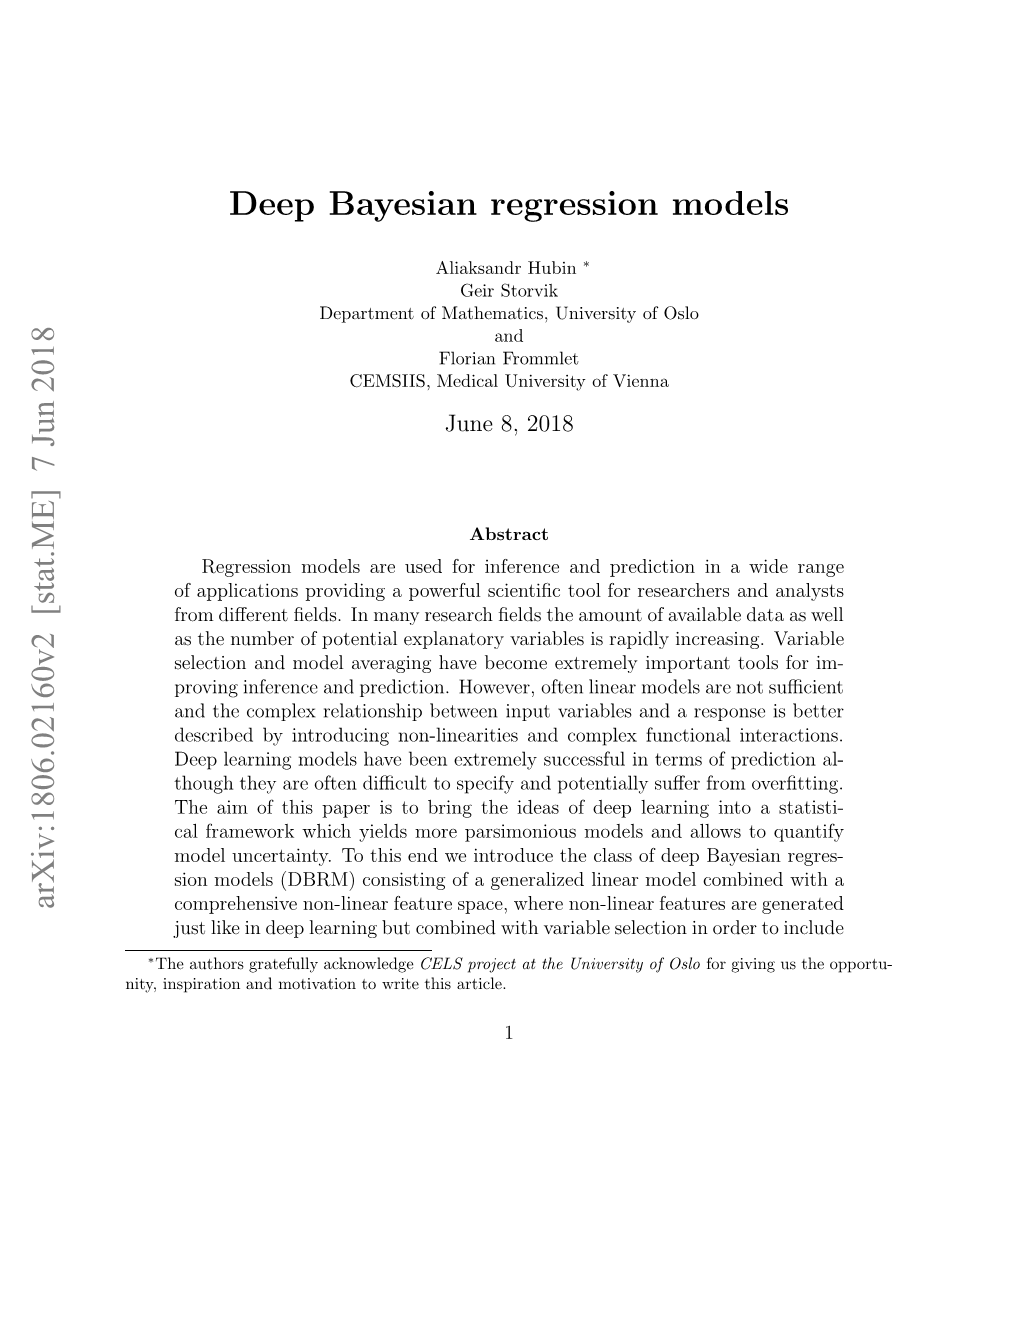 7 Jun 2018 Deep Bayesian Regression Models